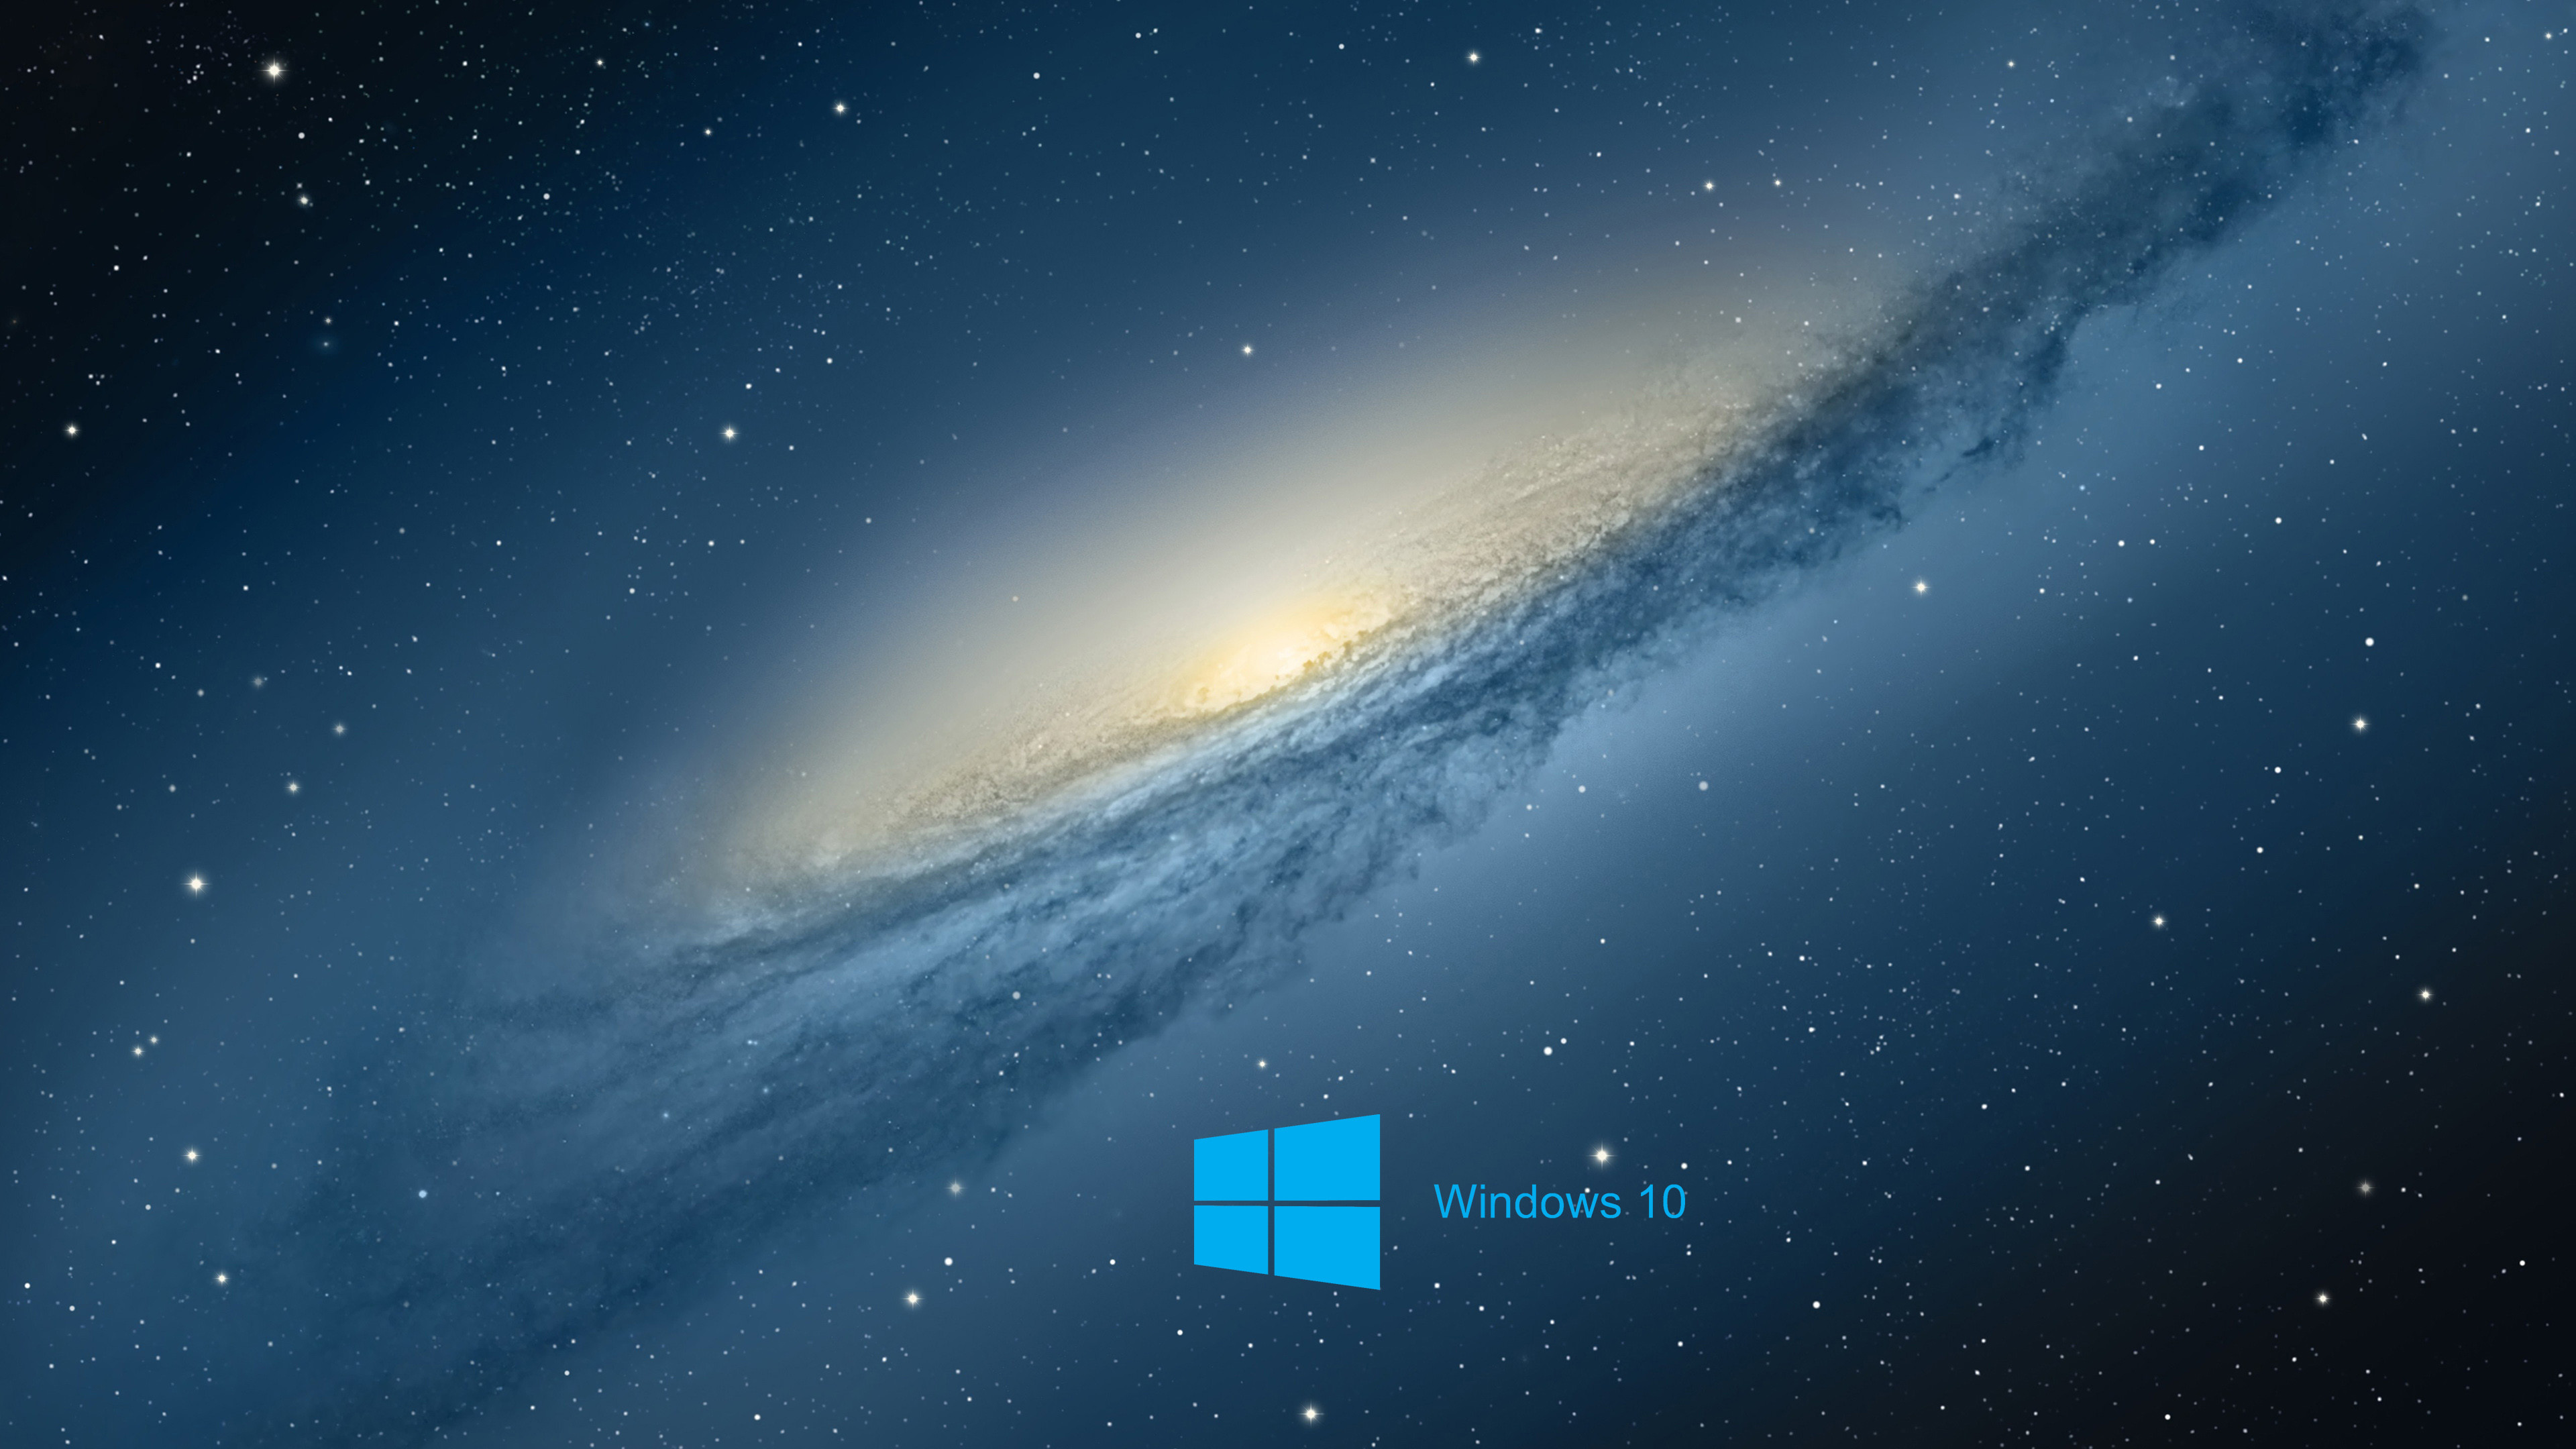 Hình nền laptop Windows 10 đang trở thành xu hướng hot nhất hiện nay với rất nhiều hình ảnh độc đáo và đẹp mắt. Tìm kiếm ngay hình nền Windows 10 tuyệt đẹp để tạo nên phong cách riêng cho máy tính của bạn.